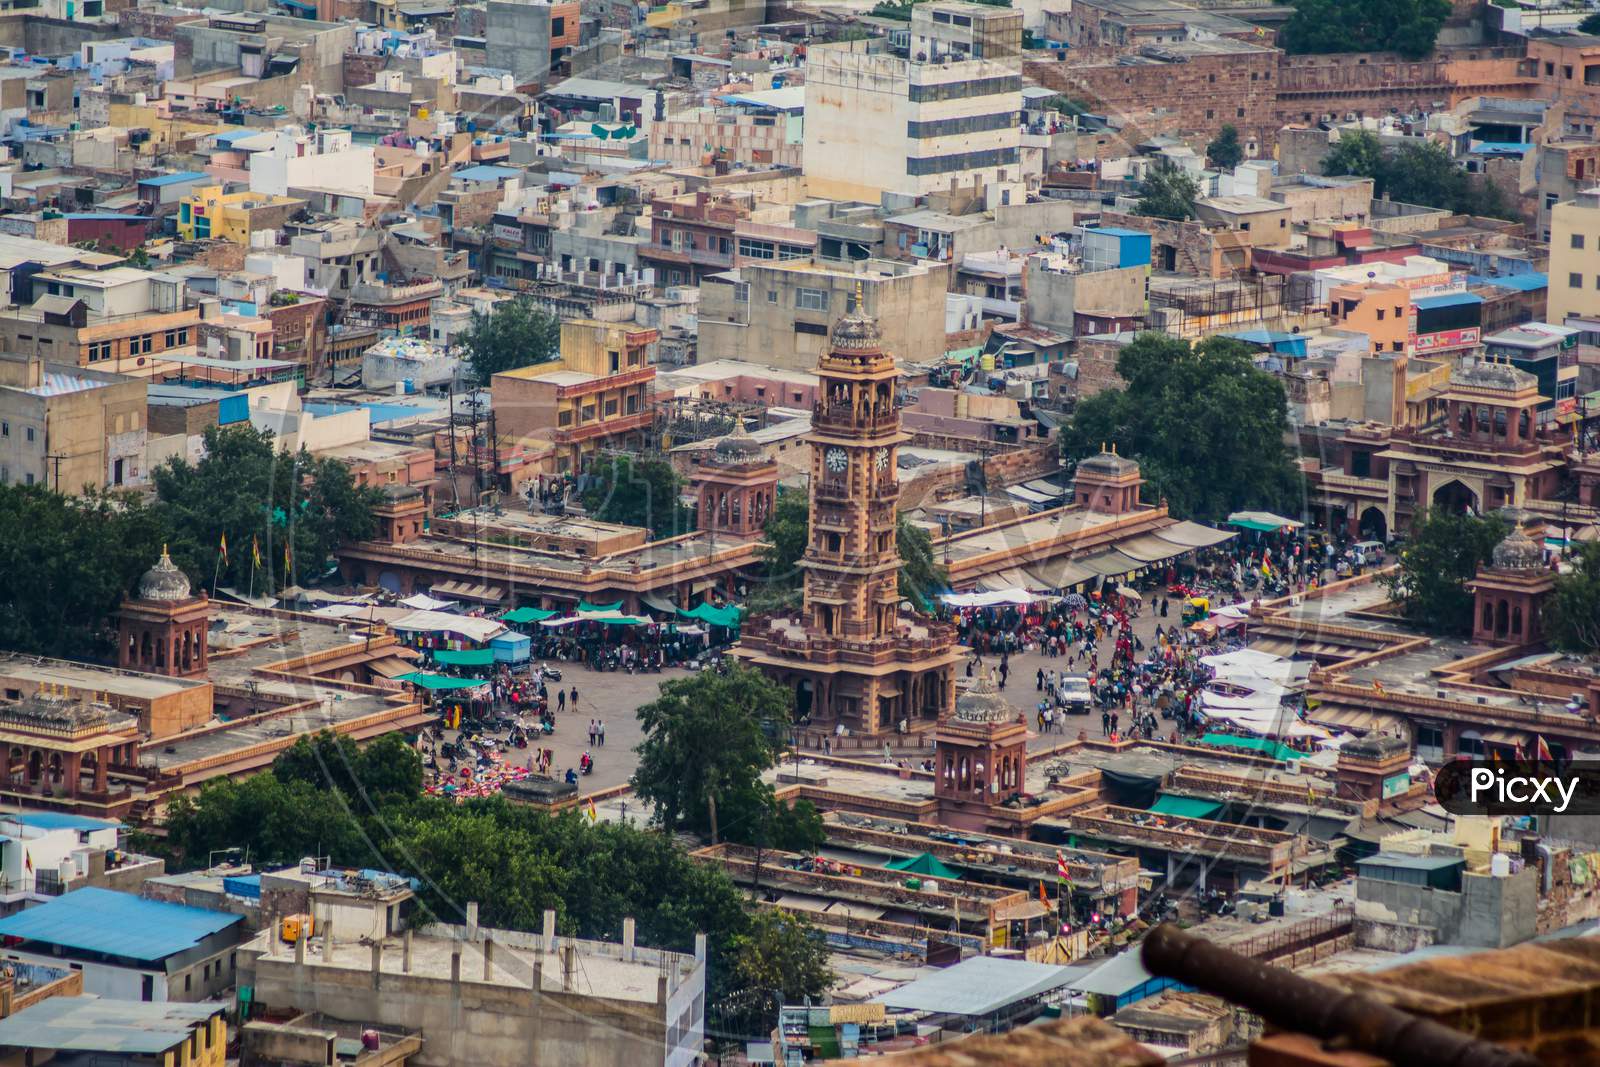 Ghanta Ghar (Clock Tower) & Sadar Market Jodhpur Rajasthan